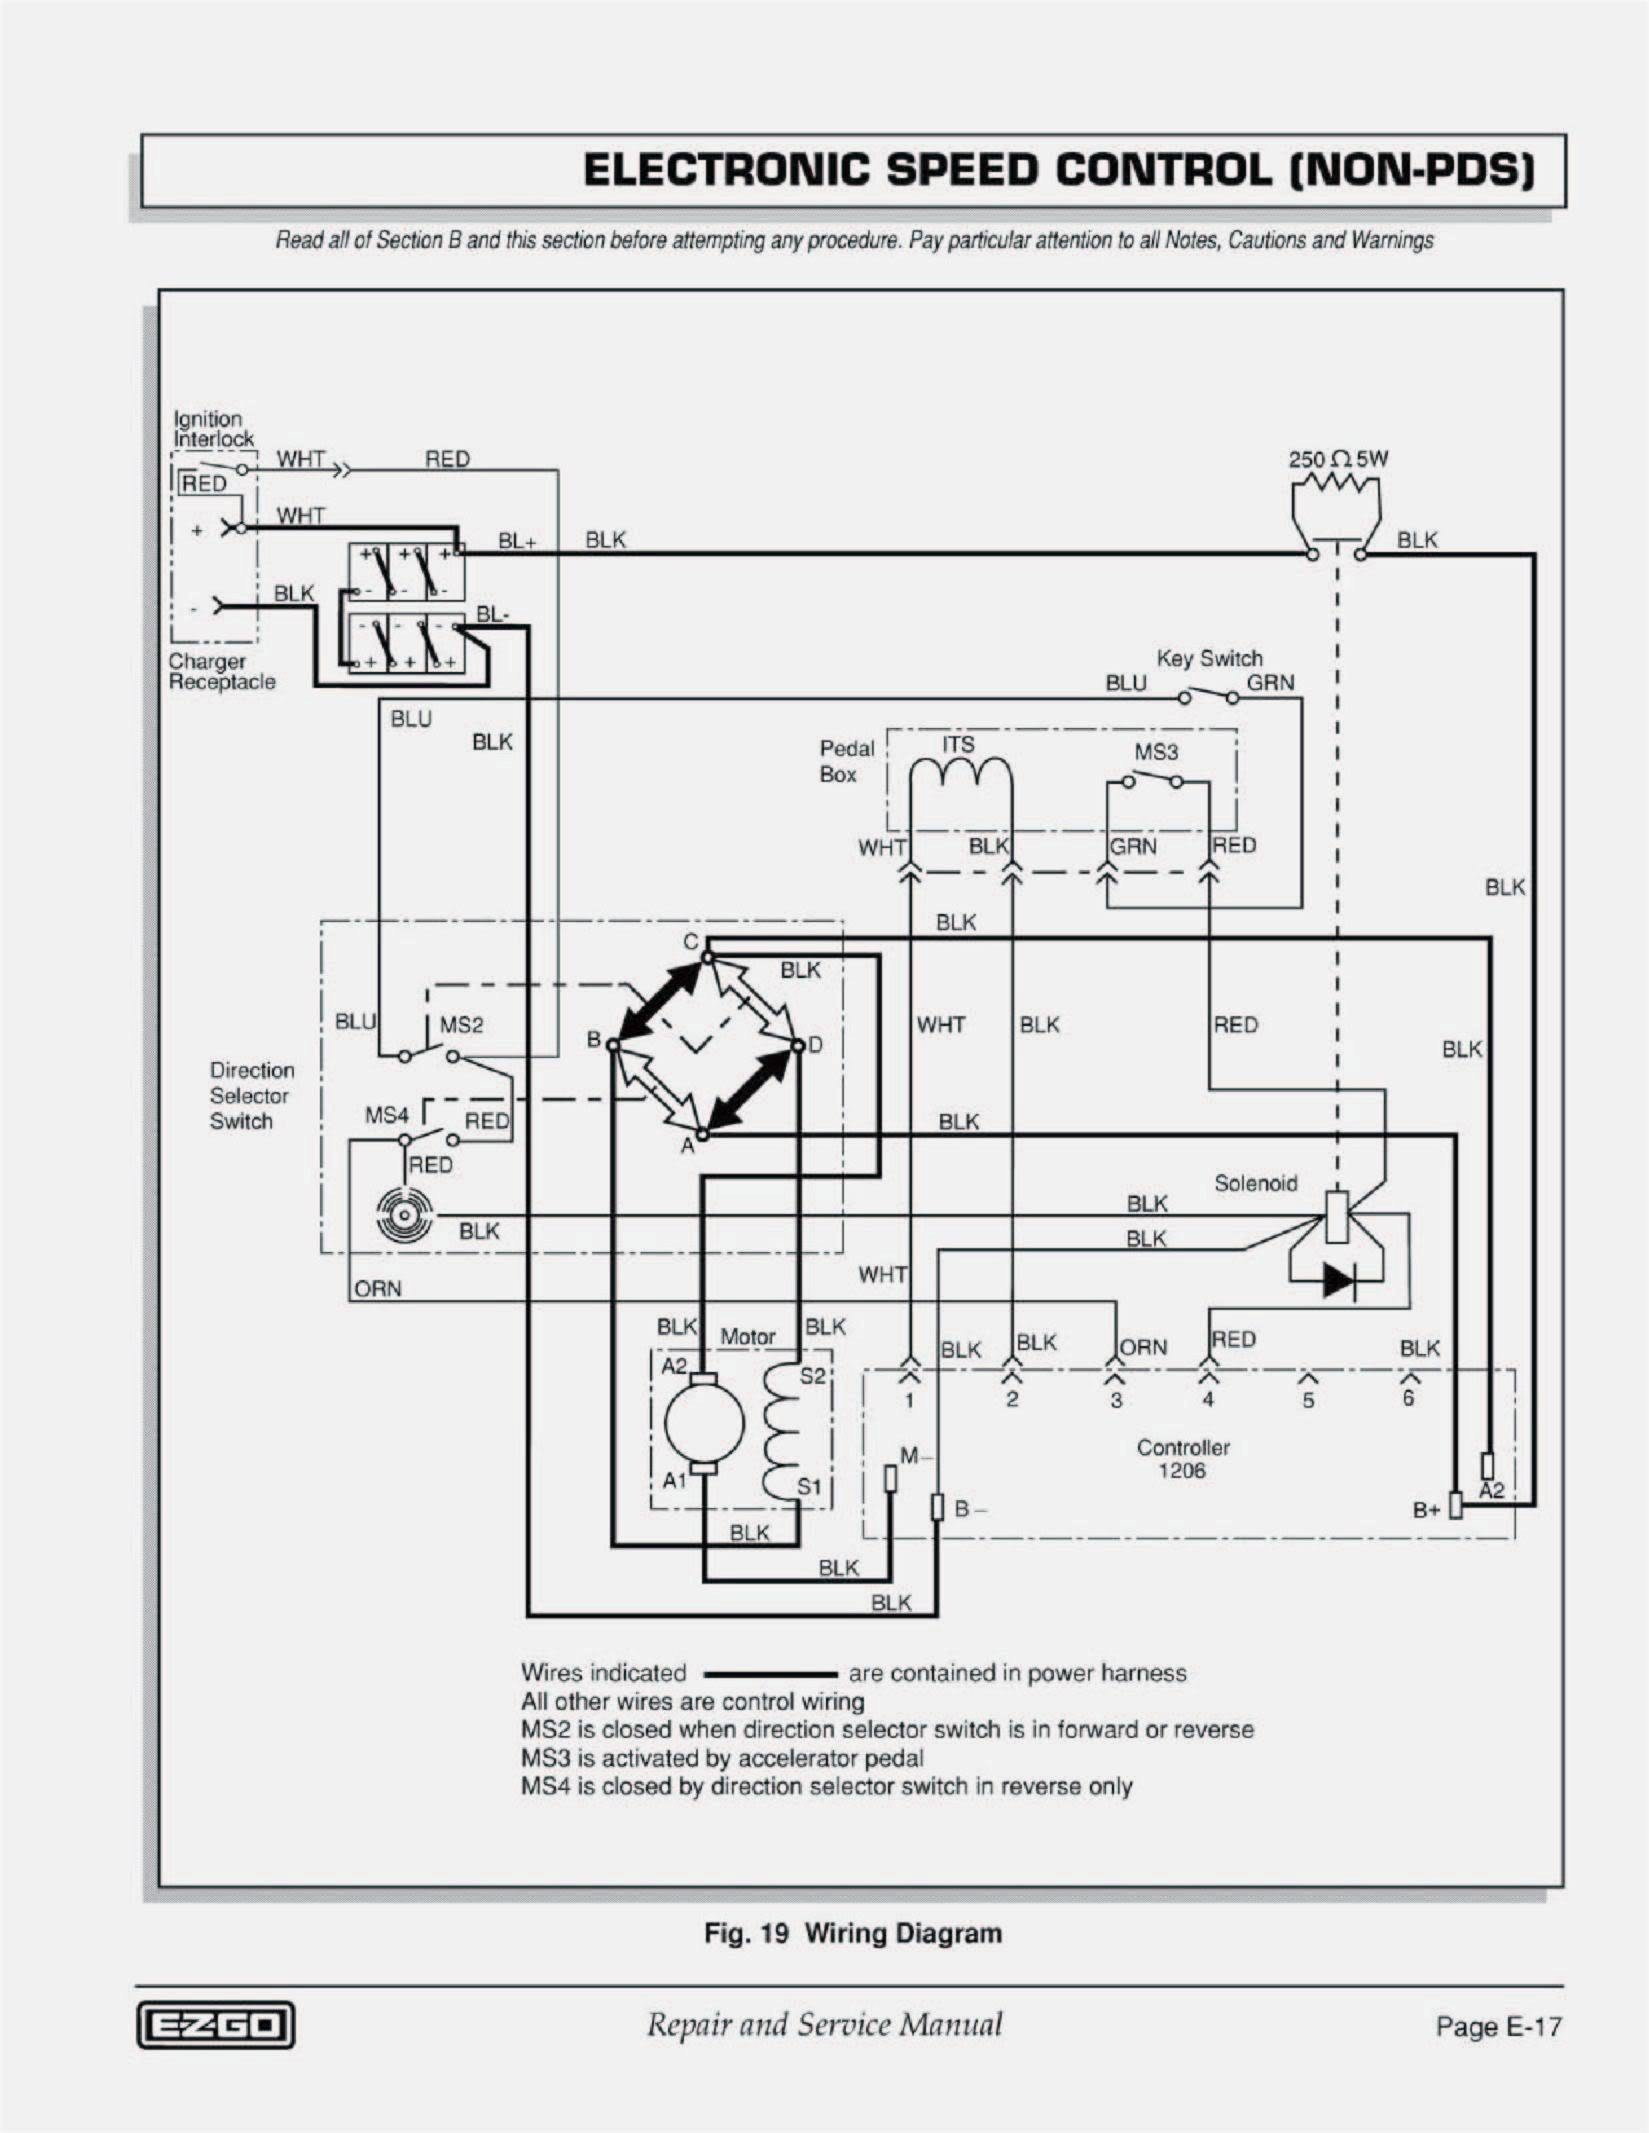 Bad Boy Ignition Switch Wiring Diagram from schematron.org